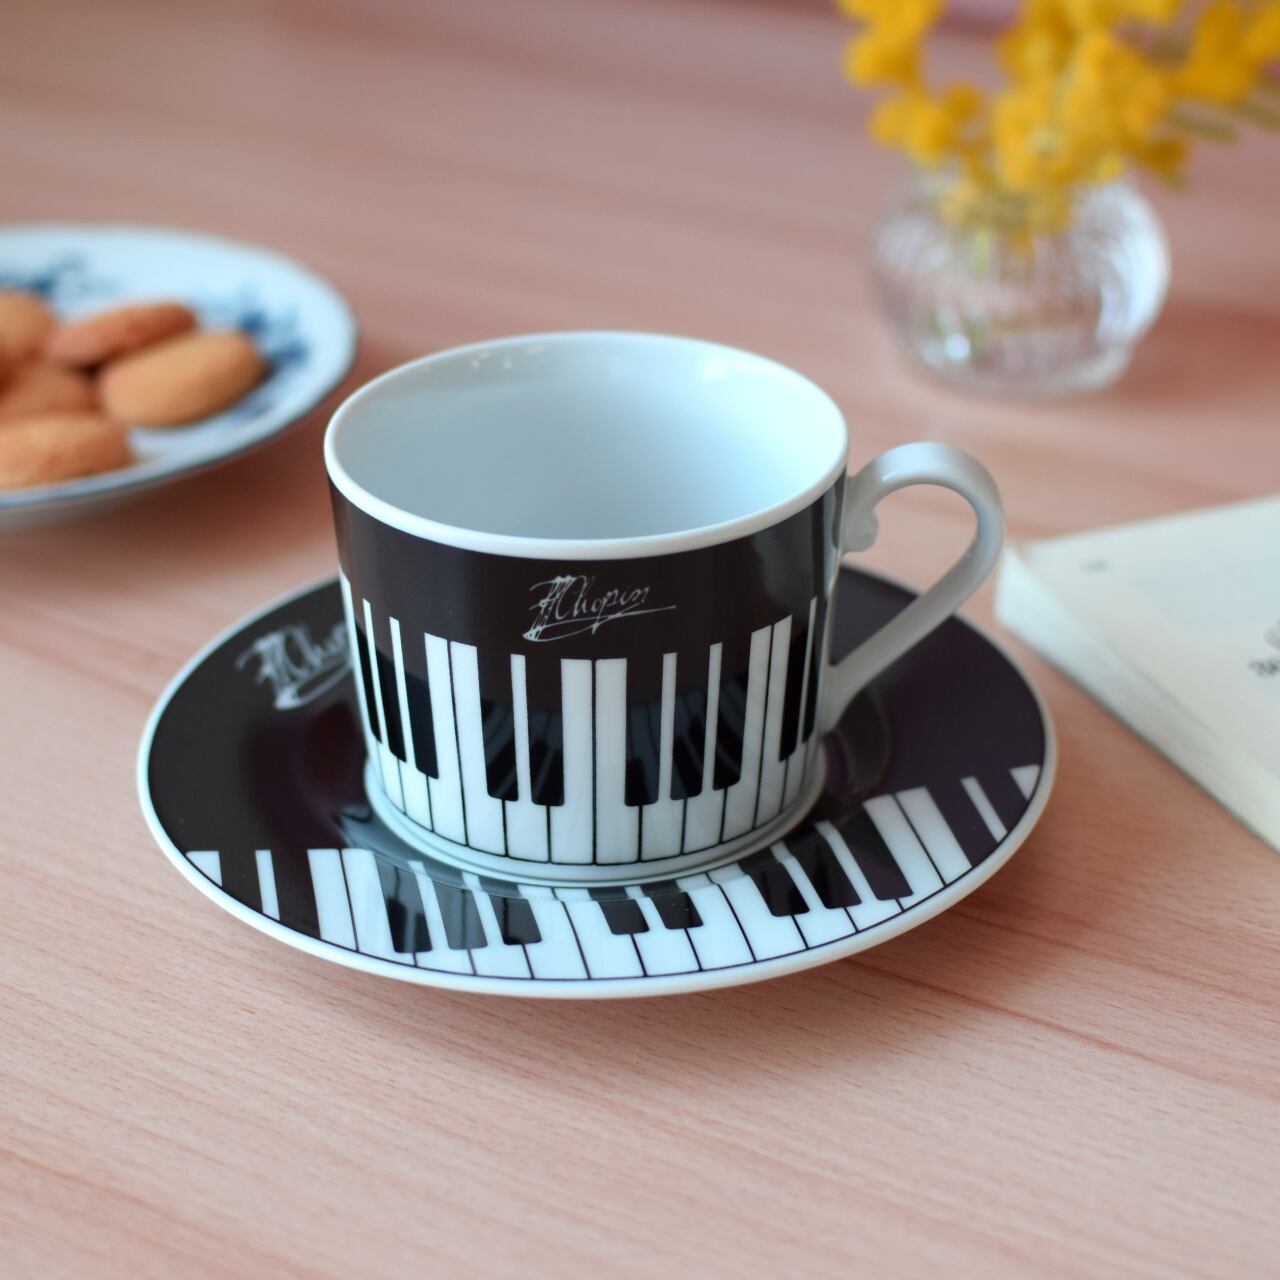 カップ ショパン ピアノ L ミュージックセレクトショップWaltz ワルツ 発表会記念品 音楽雑貨